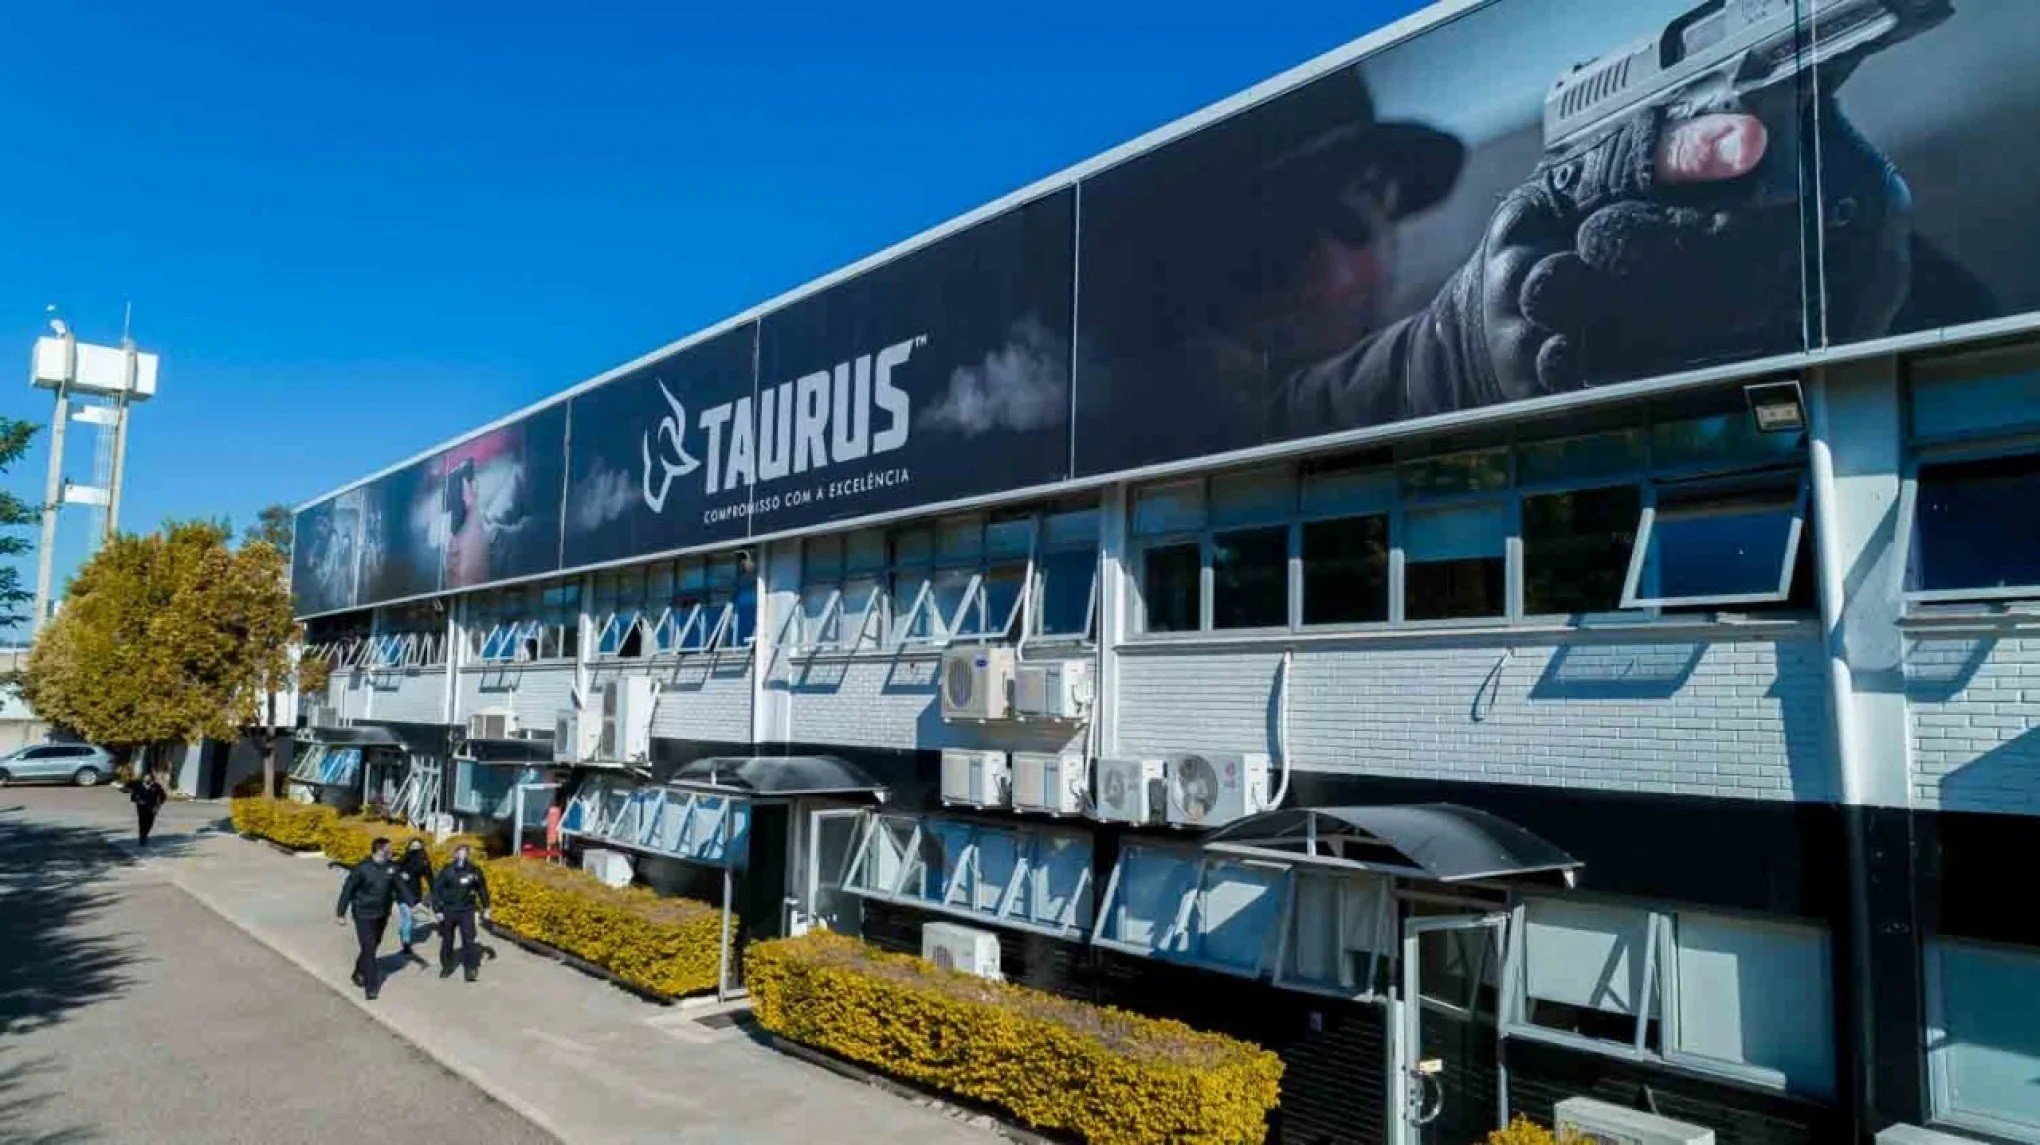 Fabricante de armas Taurus demite 100 funcionários: "O decreto é sufocante", diz CEO da empresa sobre novas regras do setor